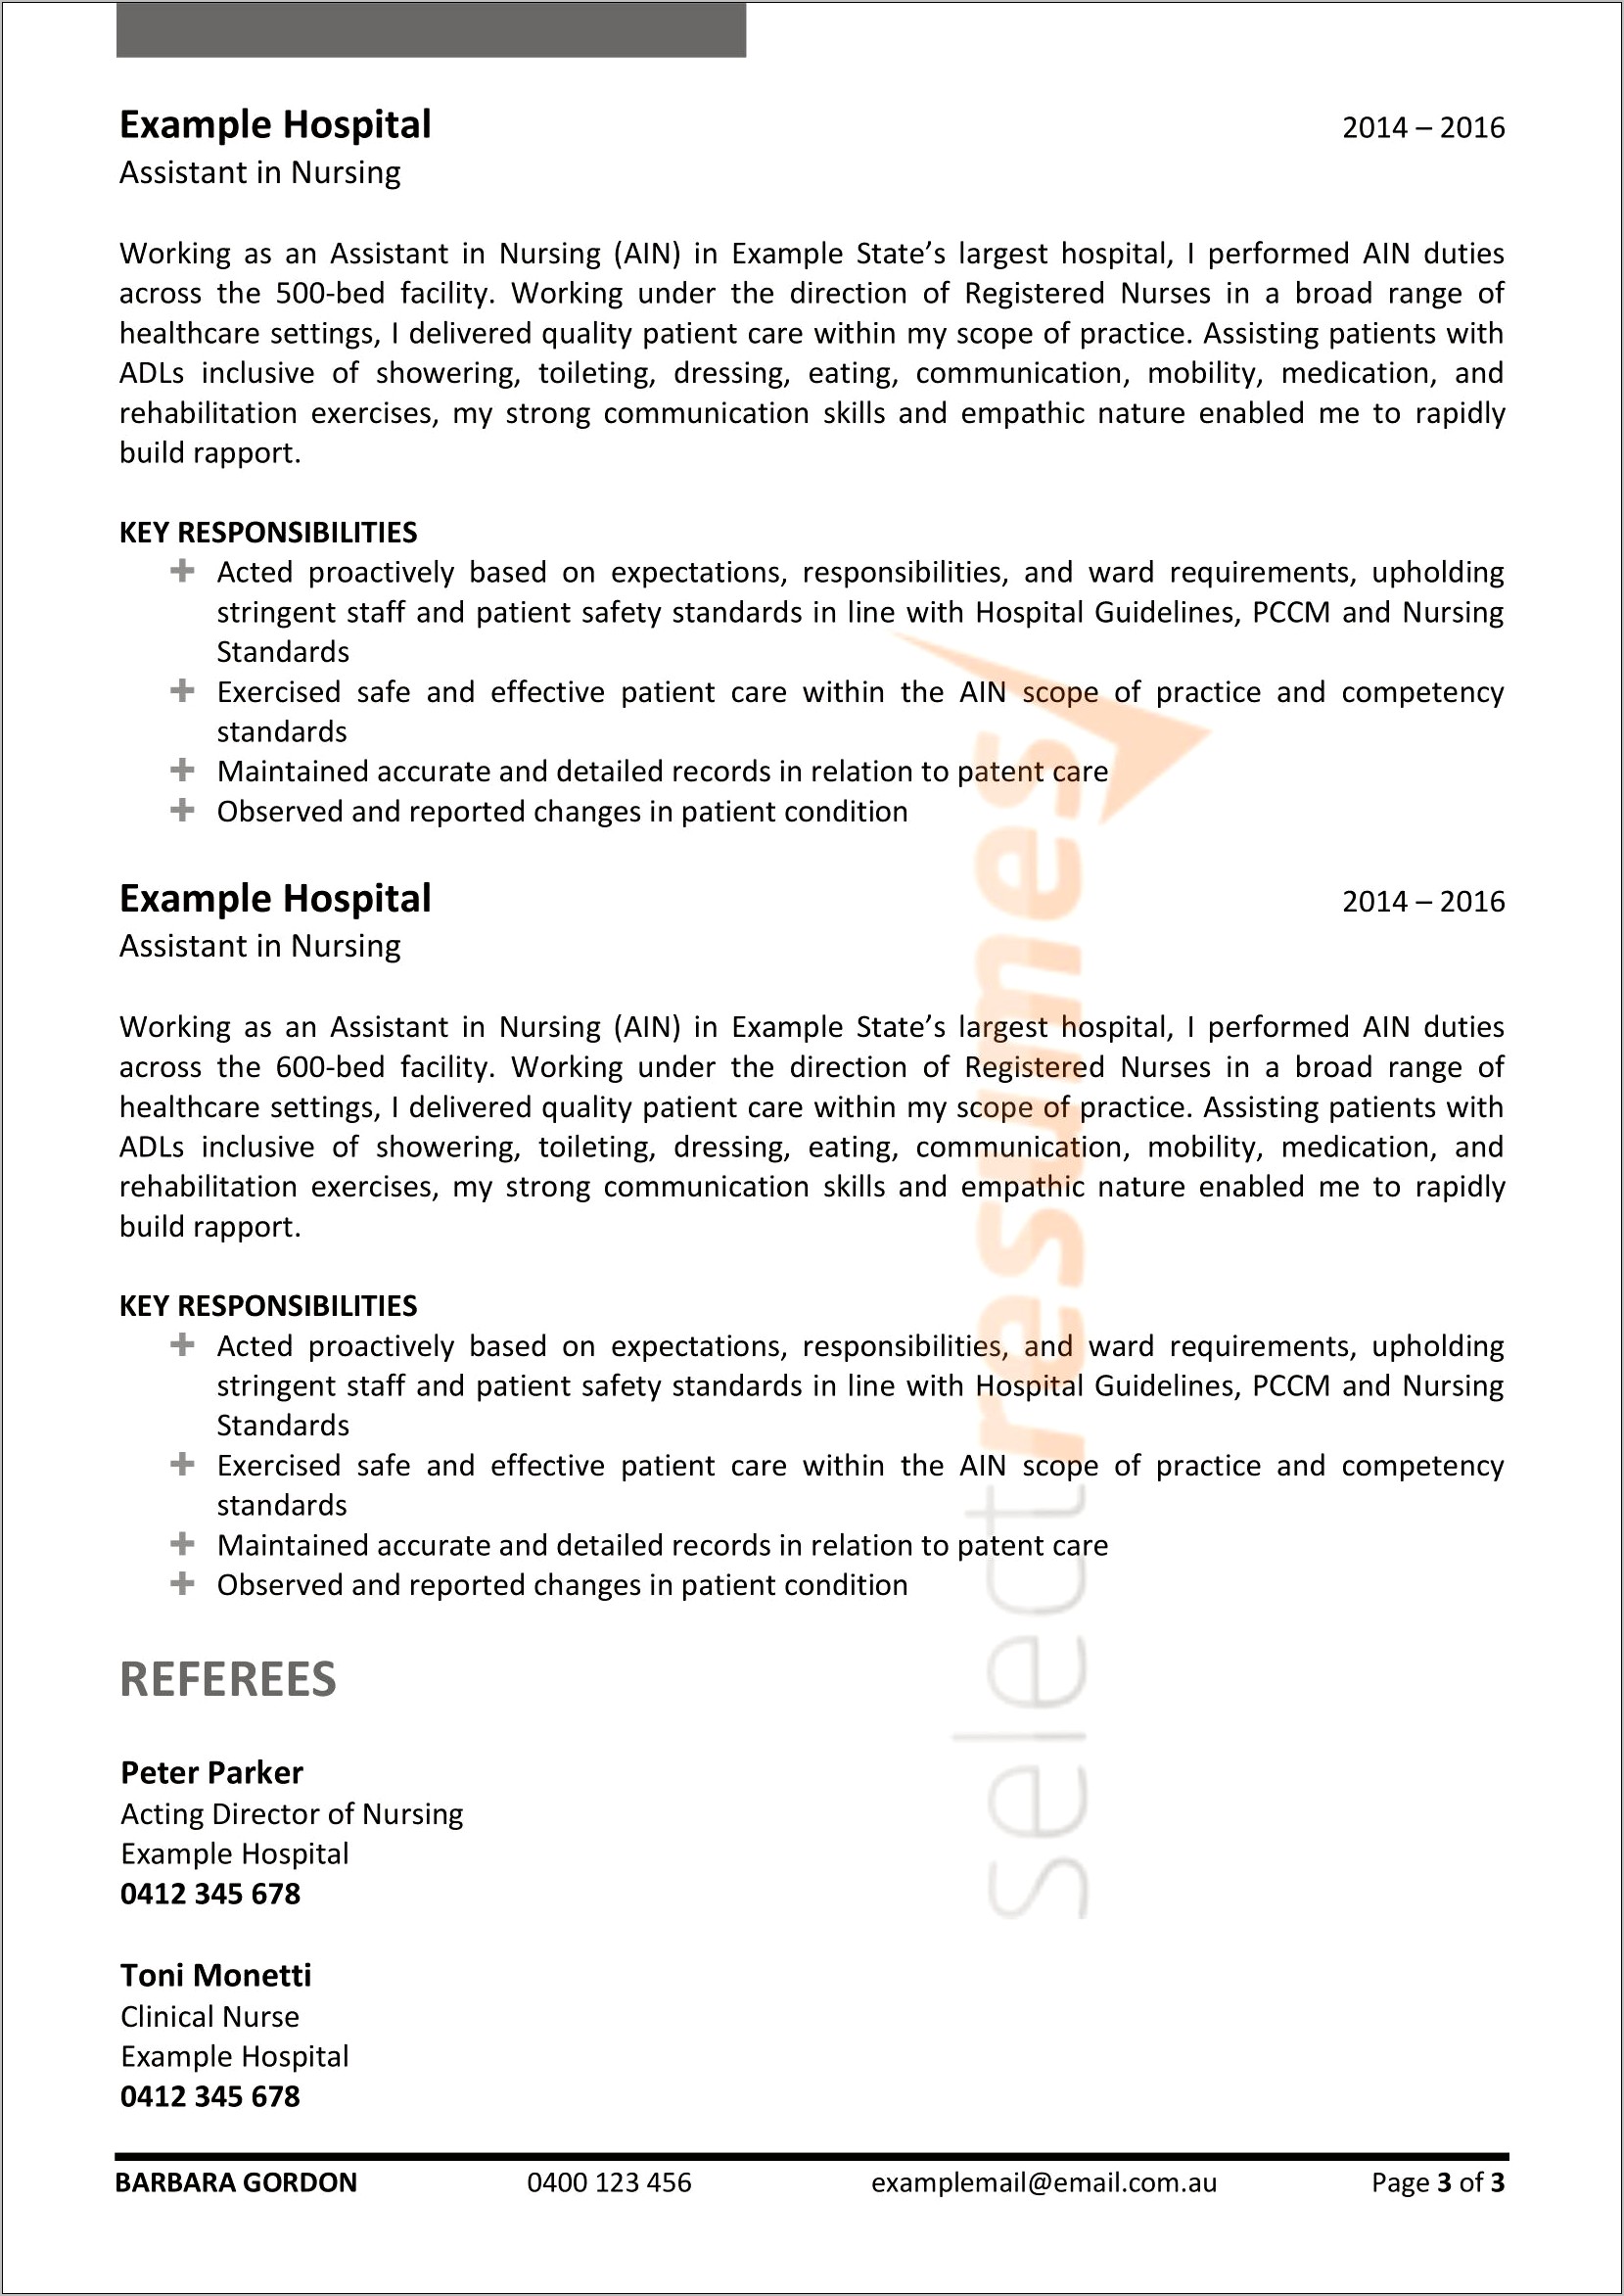 Resume For Nursing Job In Australia